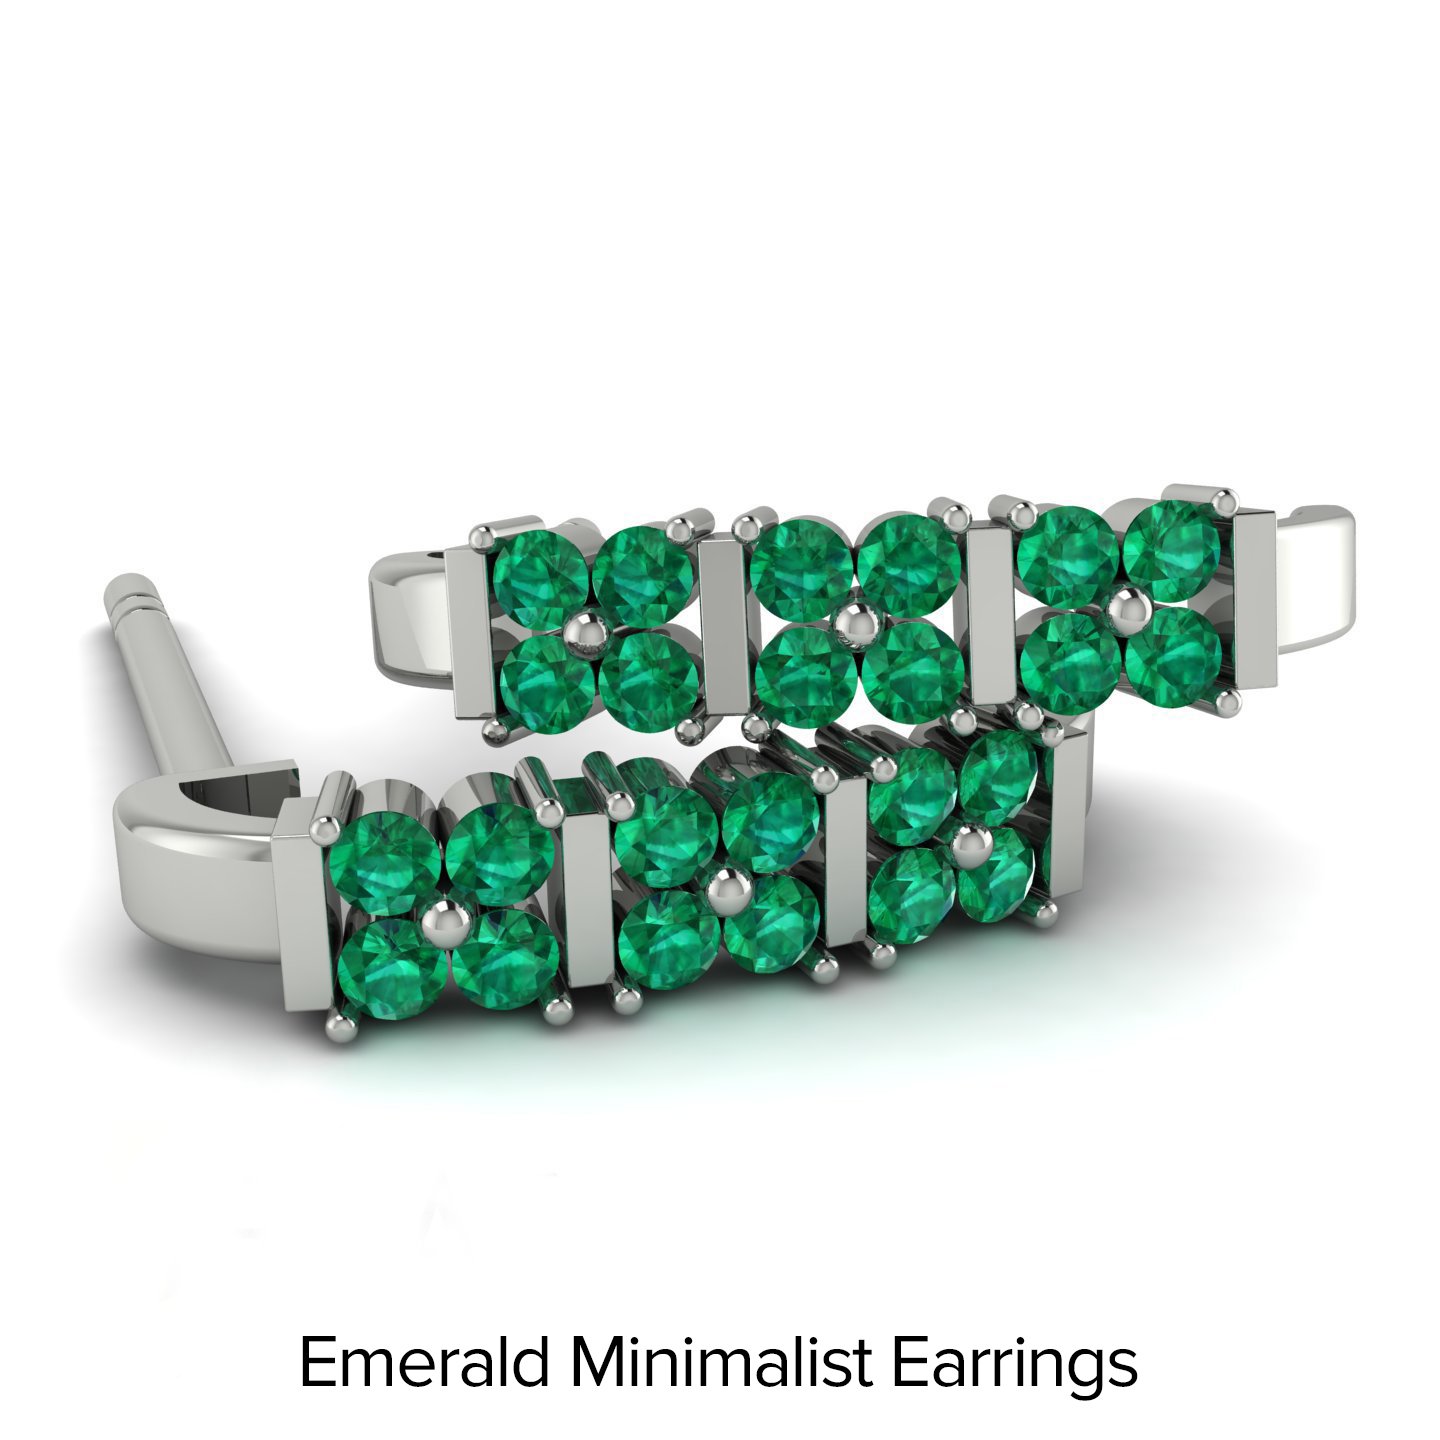 Emerald Minimalist Earrings